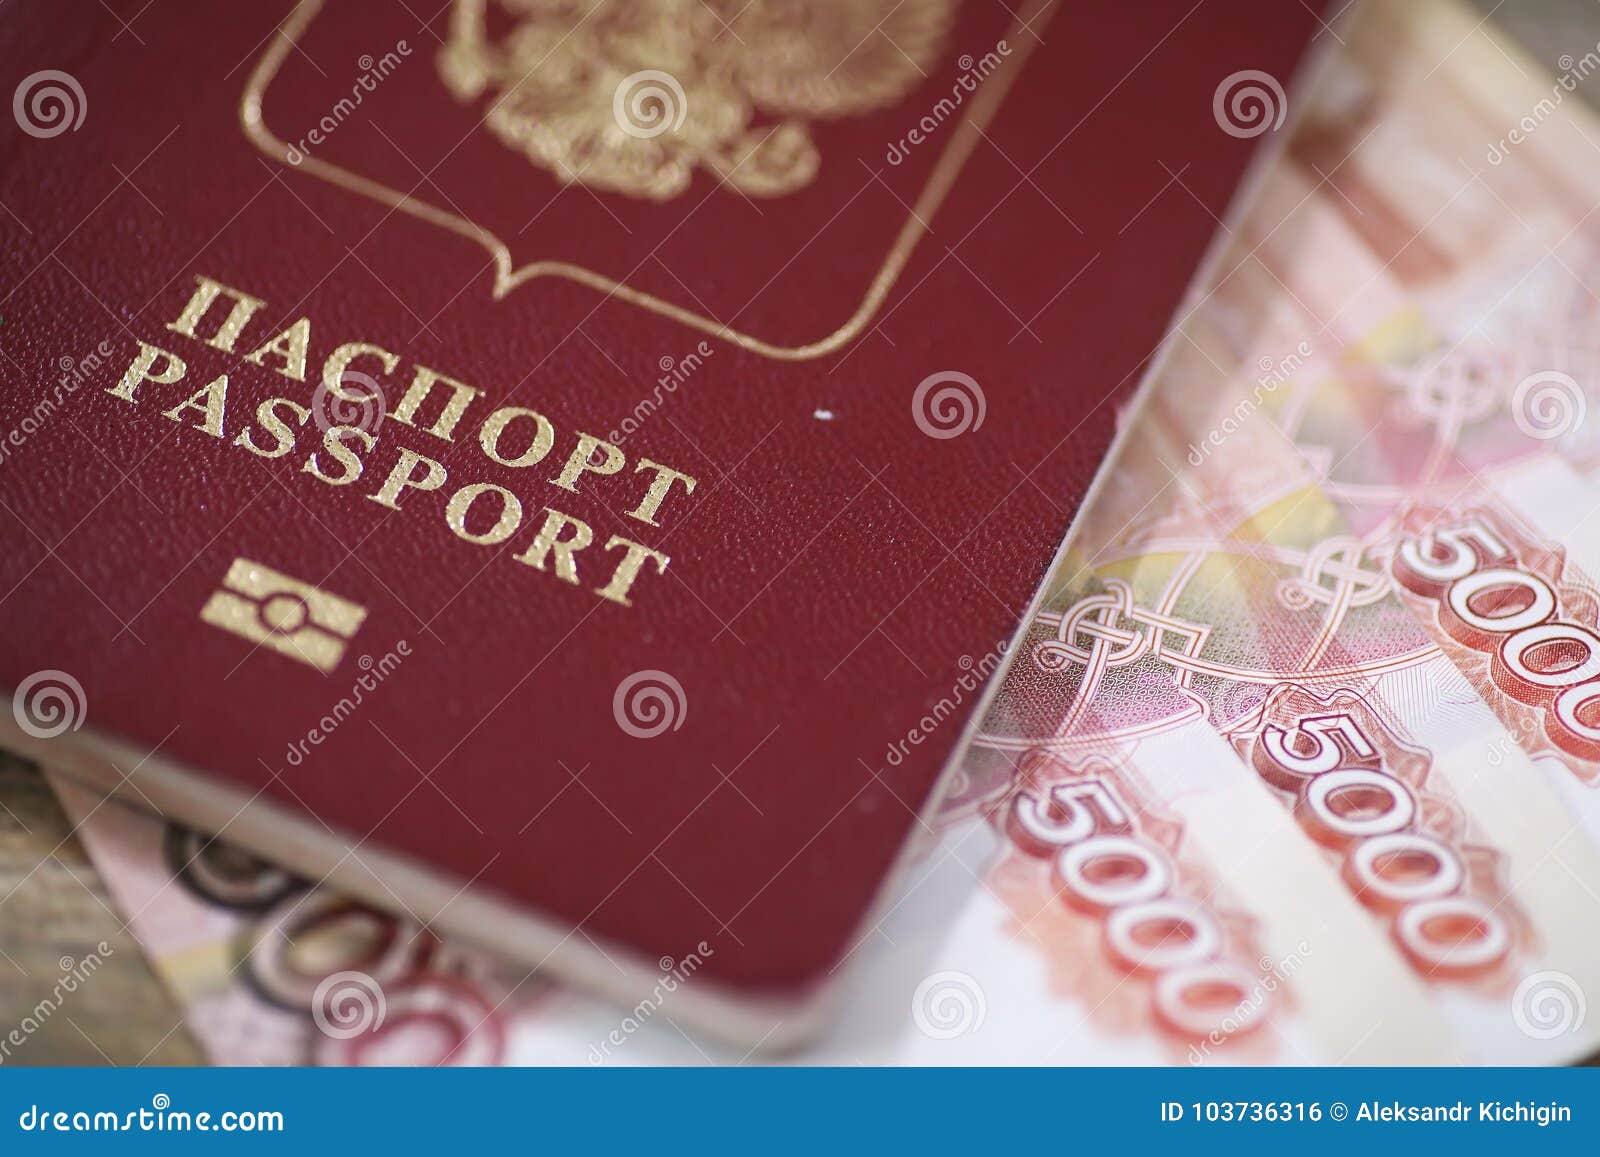 Микрозайм по паспорту в Москвае без проверки ки